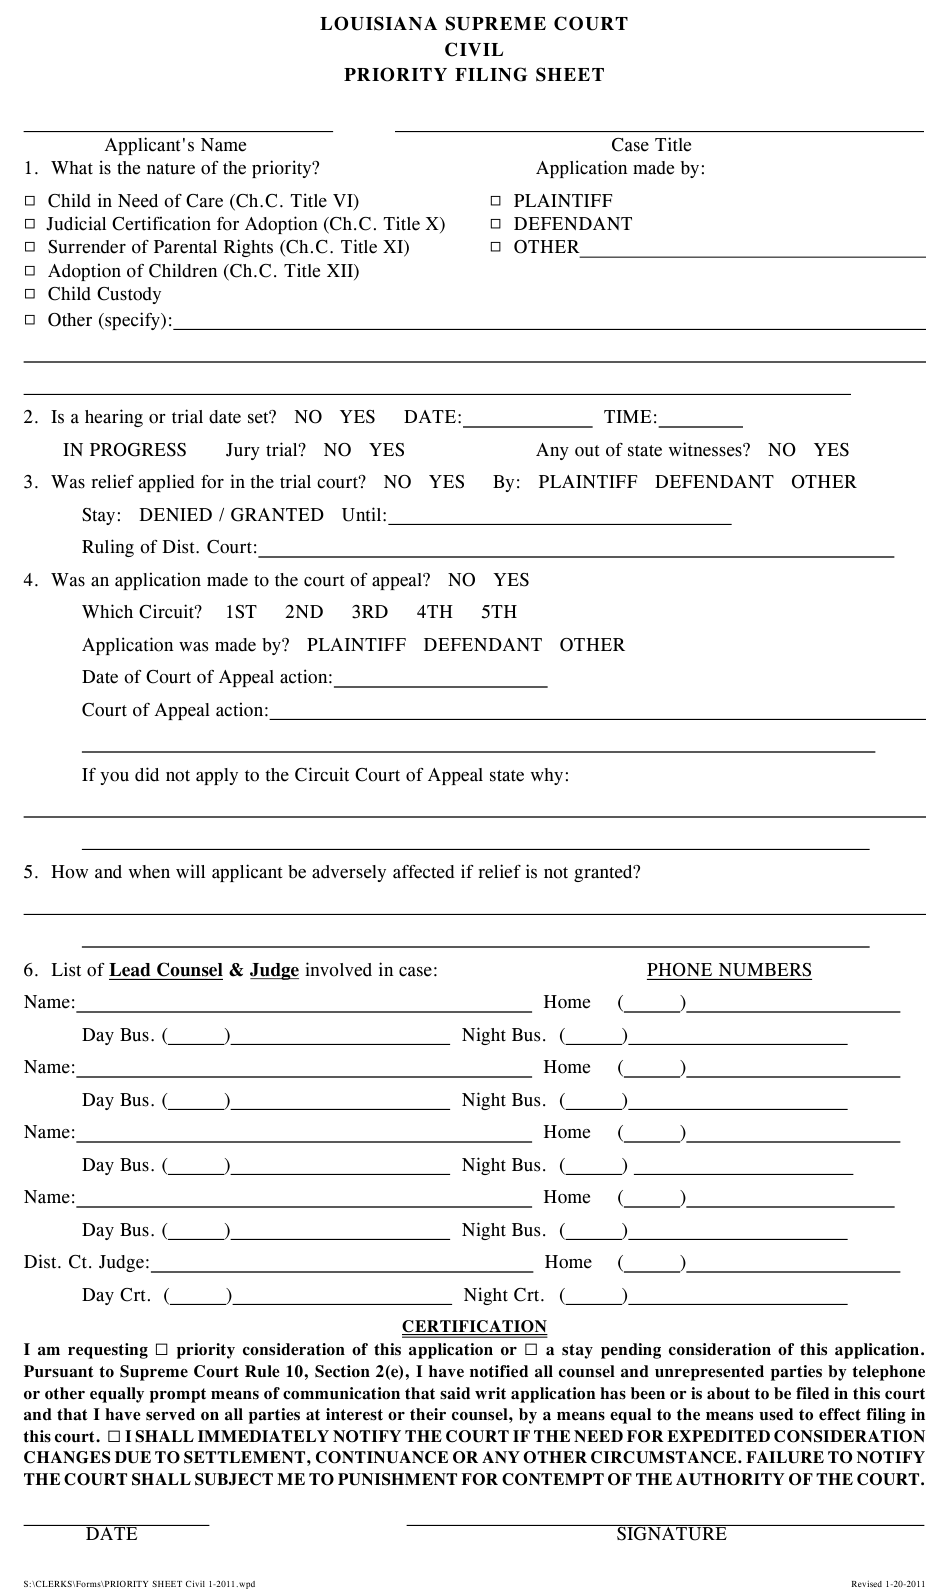 Louisiana Civil Priority Filing Sheet Download Printable PDF